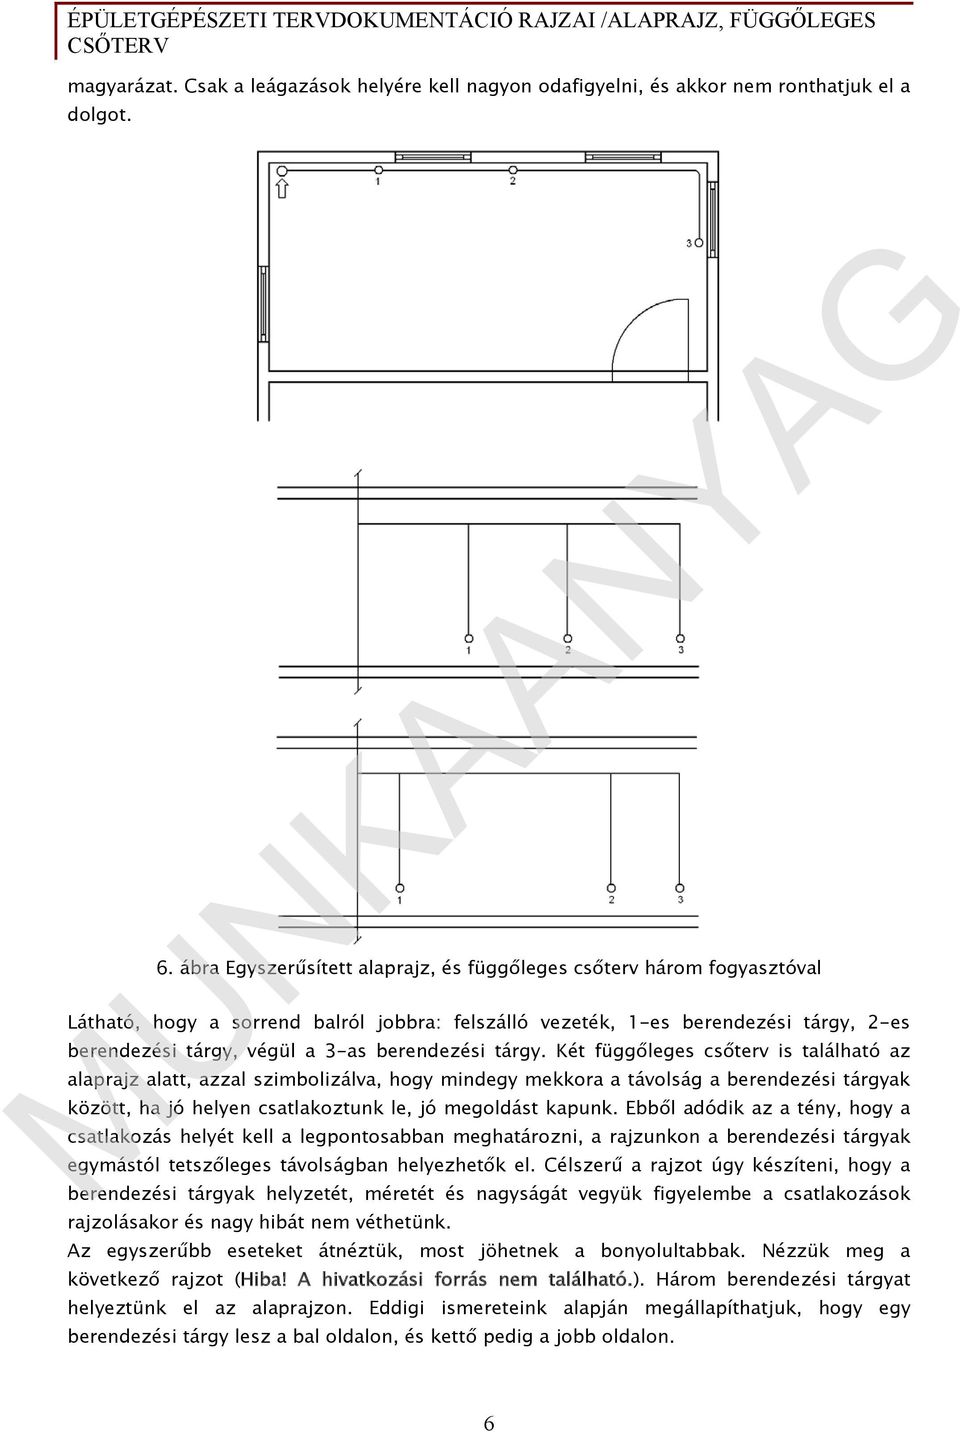 Épületgépészeti tervdokumentáció rajzai /alaprajz, függőleges csőterv/ -  PDF Ingyenes letöltés